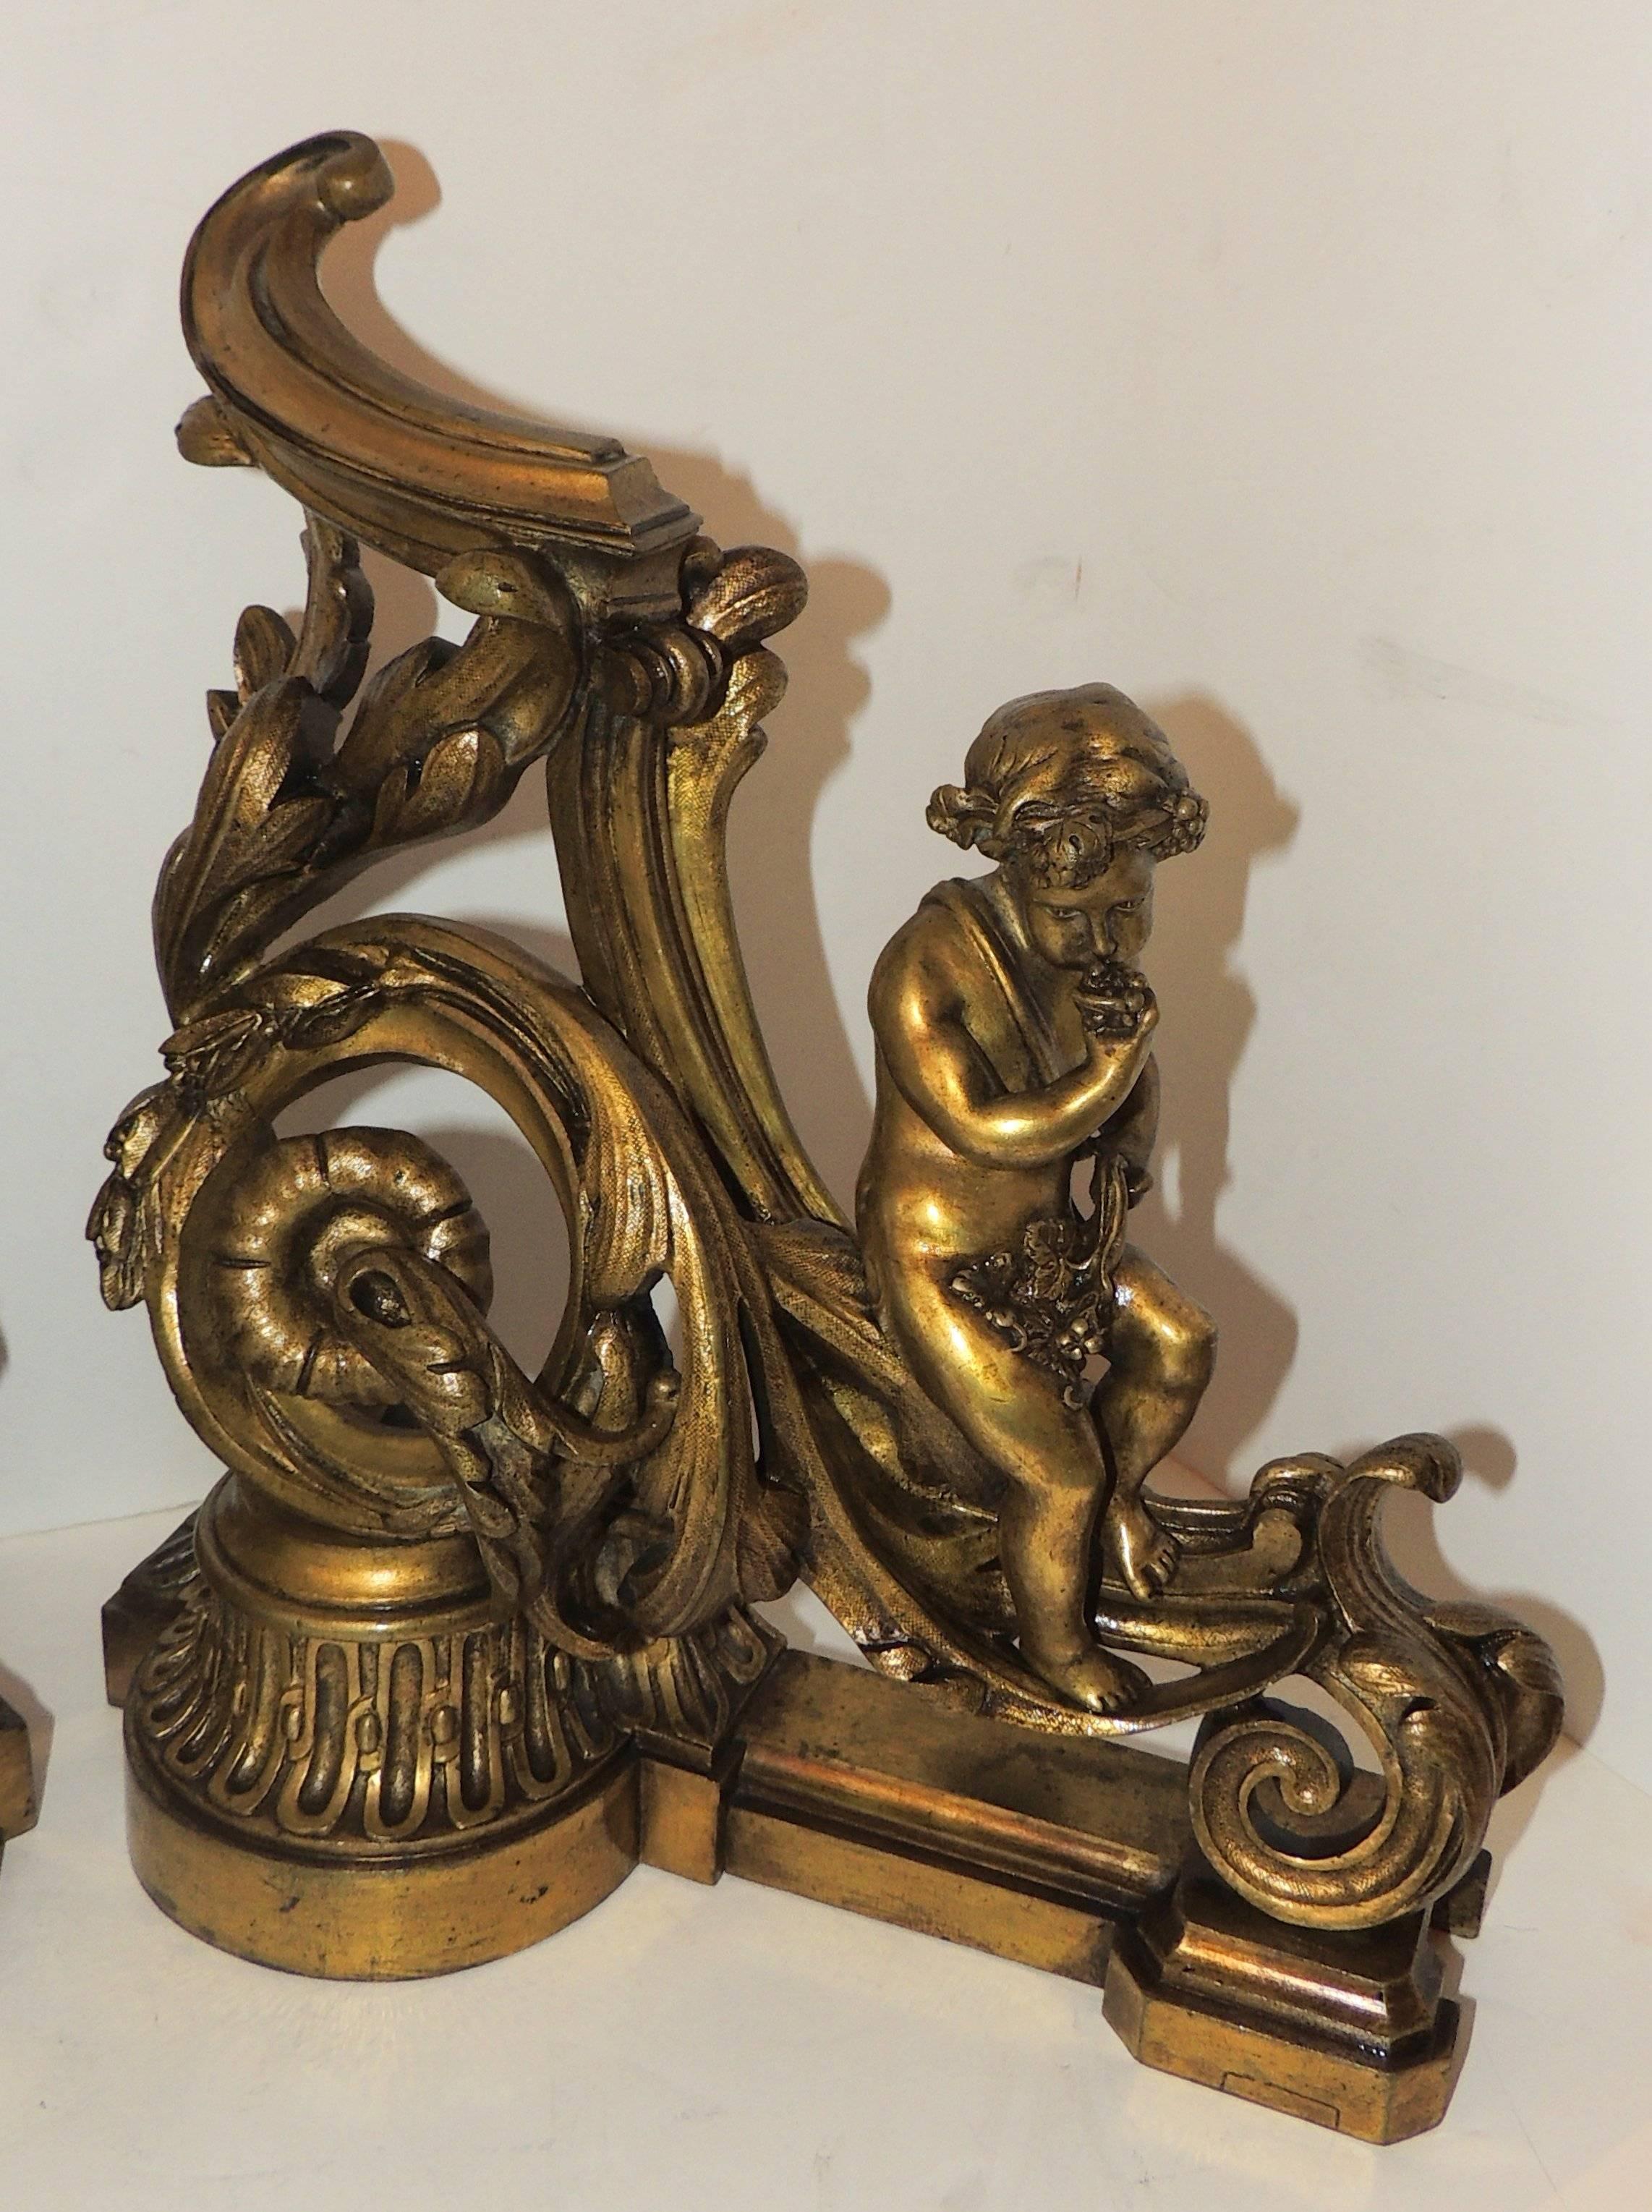 Merveilleux chérubin putti français en bronze doré pour cheminée Chenets andirons.

Mesures : 12